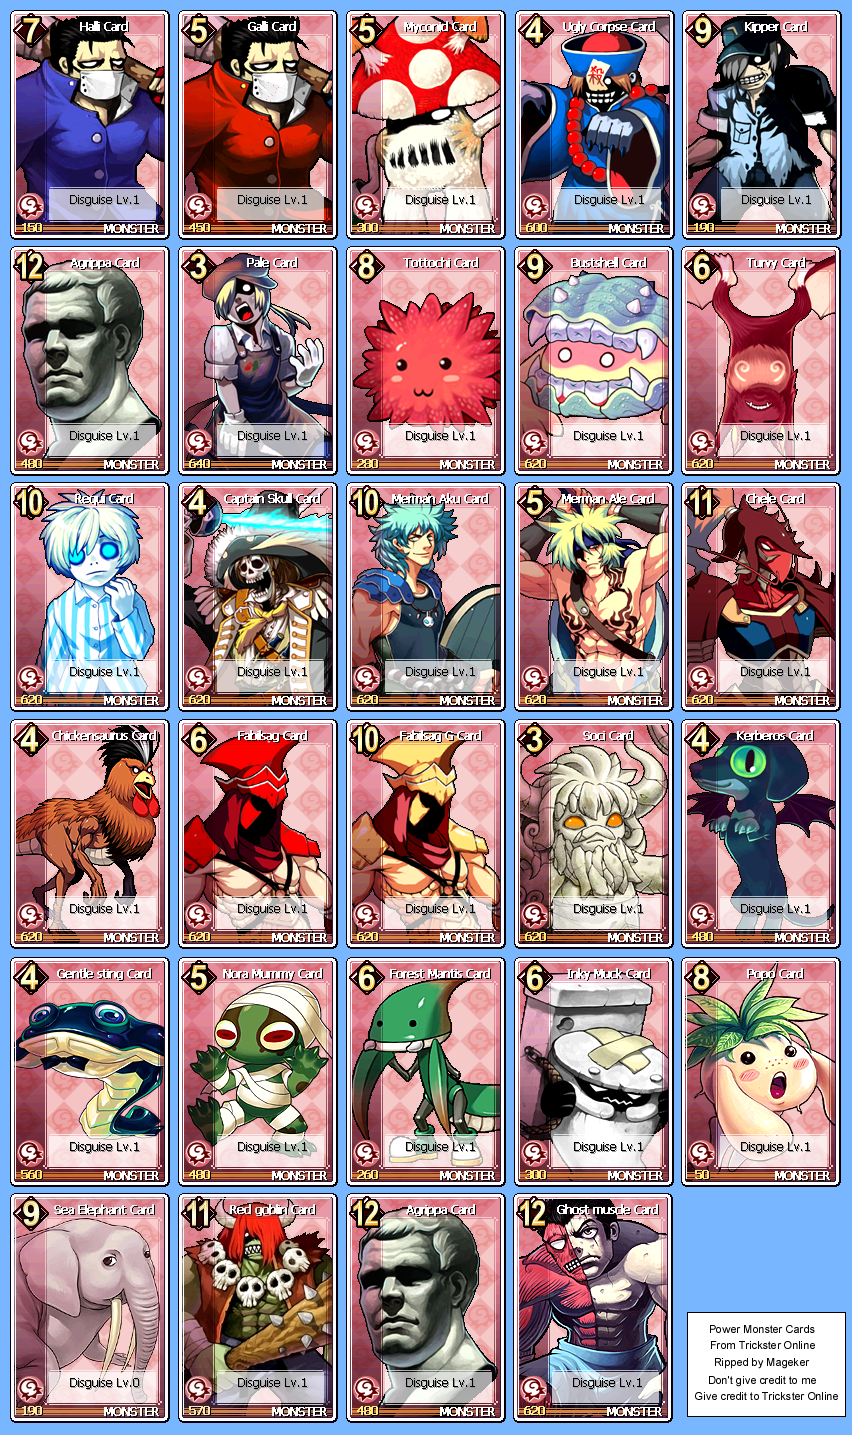 Power Monster Cards 2